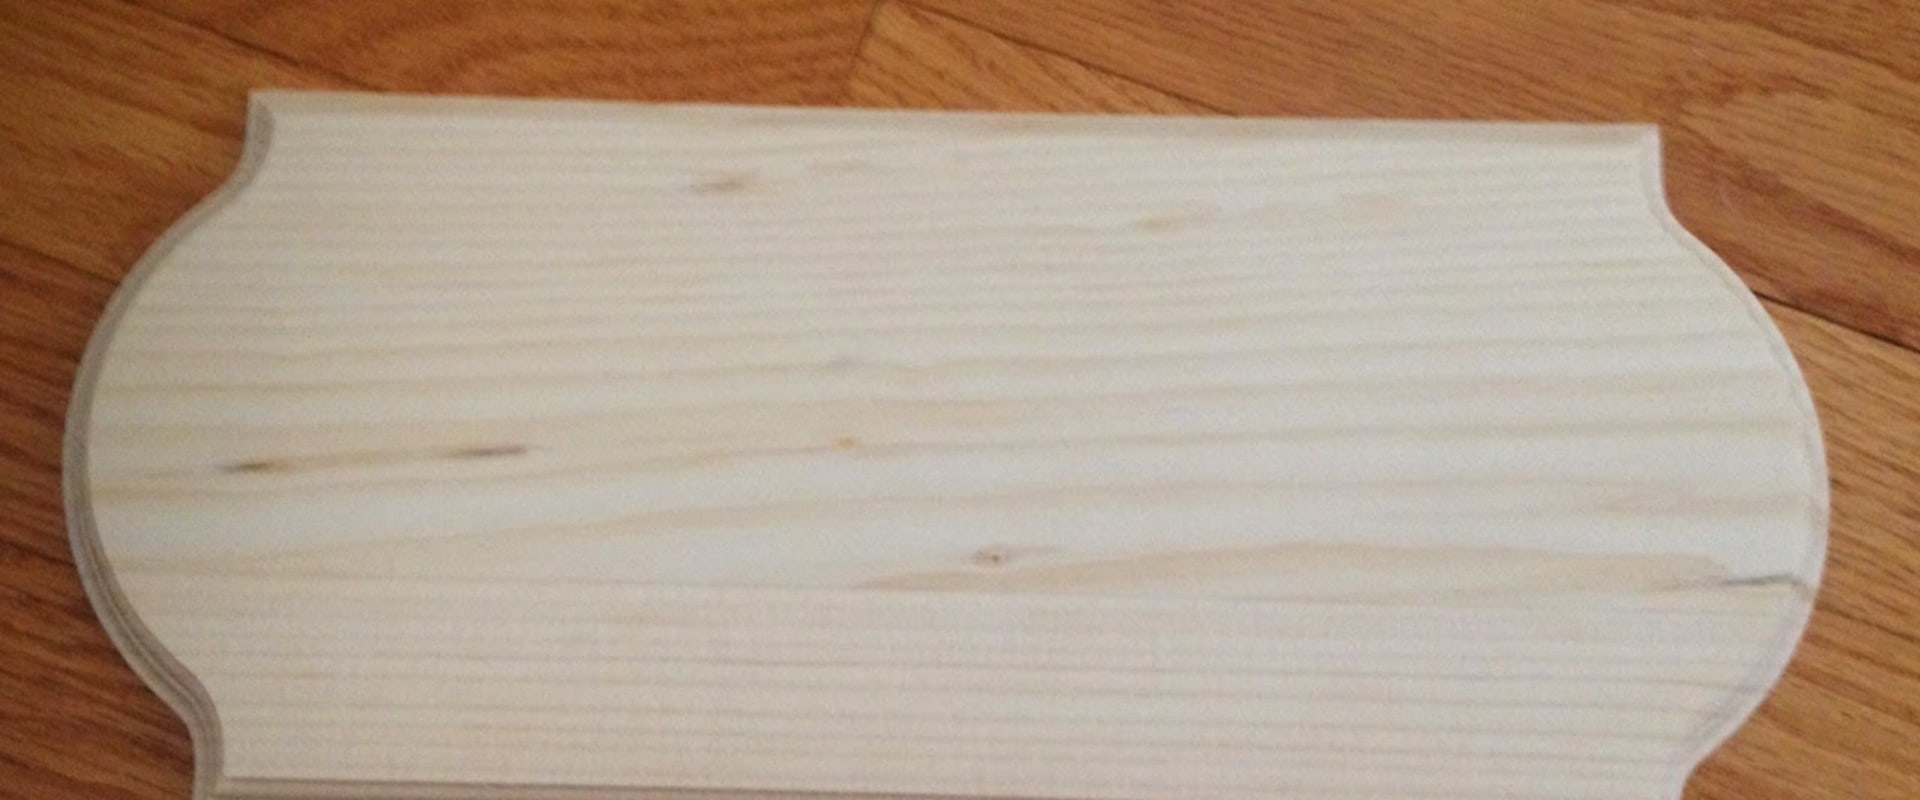 Will cricut vinyl stick to wood?